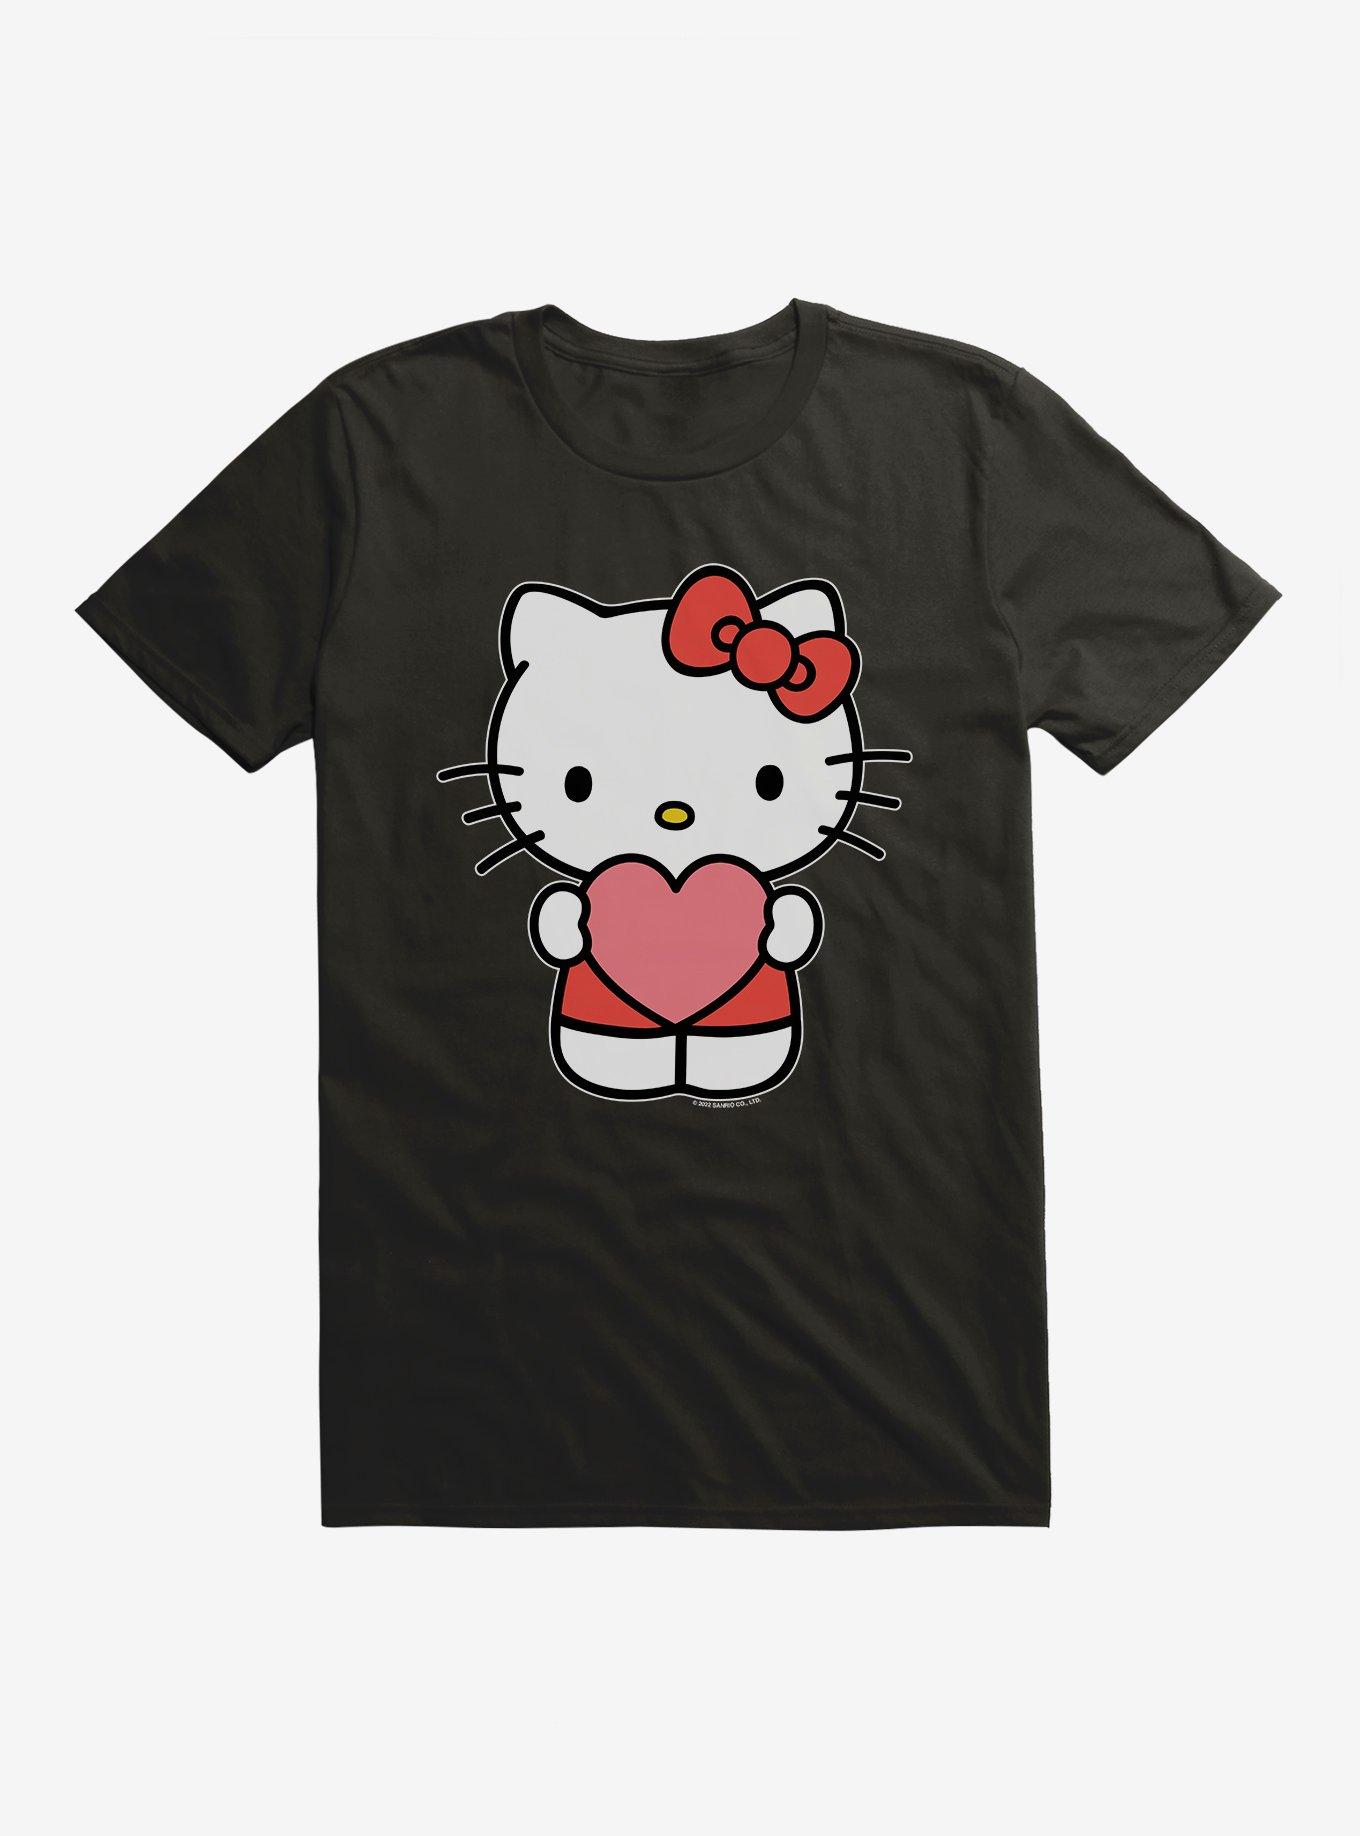 🍓Not Mine🍓  Cute tshirt designs, Roblox codes, Roblox shirt